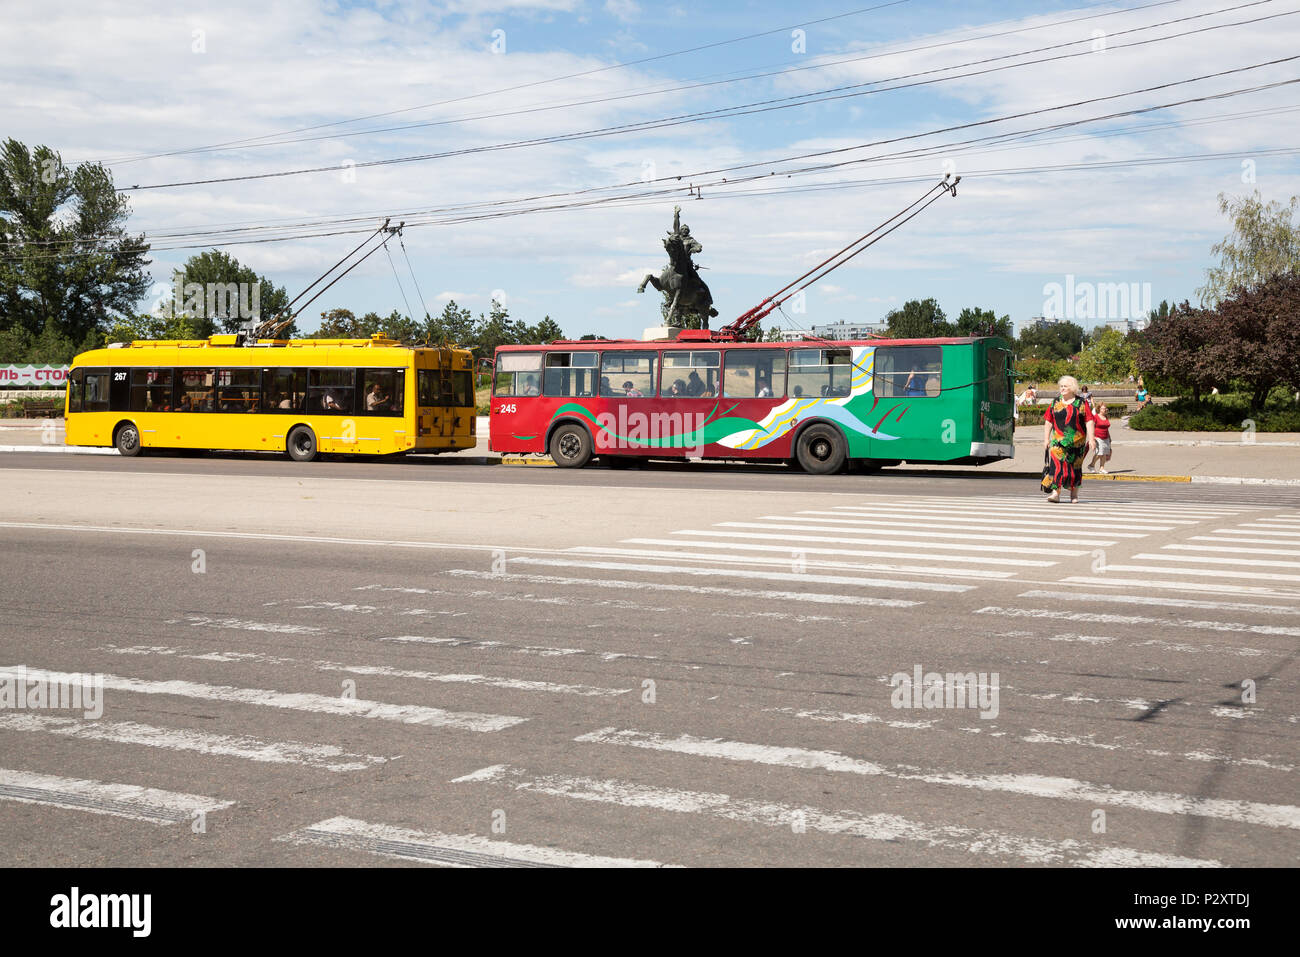 25.08.2016, Tiraspol, Transnistrien, Moldau - Trolleybusse, eine rot-grüne in der TRANSNISTRISCHEN Farben, ältere Dame in farblich passenden Kleid kreuze Zebr Stockfoto